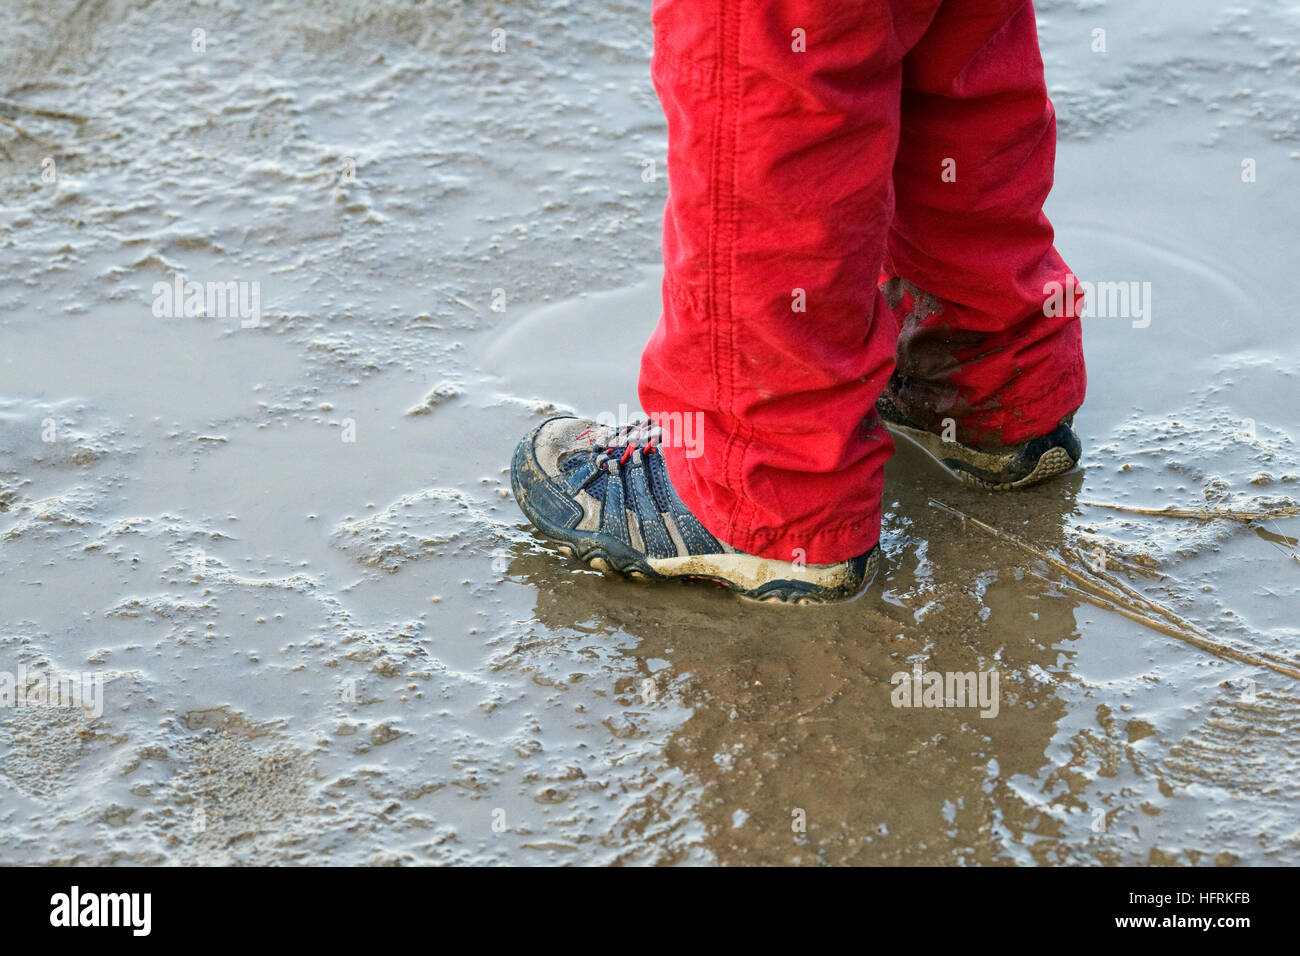 Un niño jugando en un charco lodoso. Foto de stock